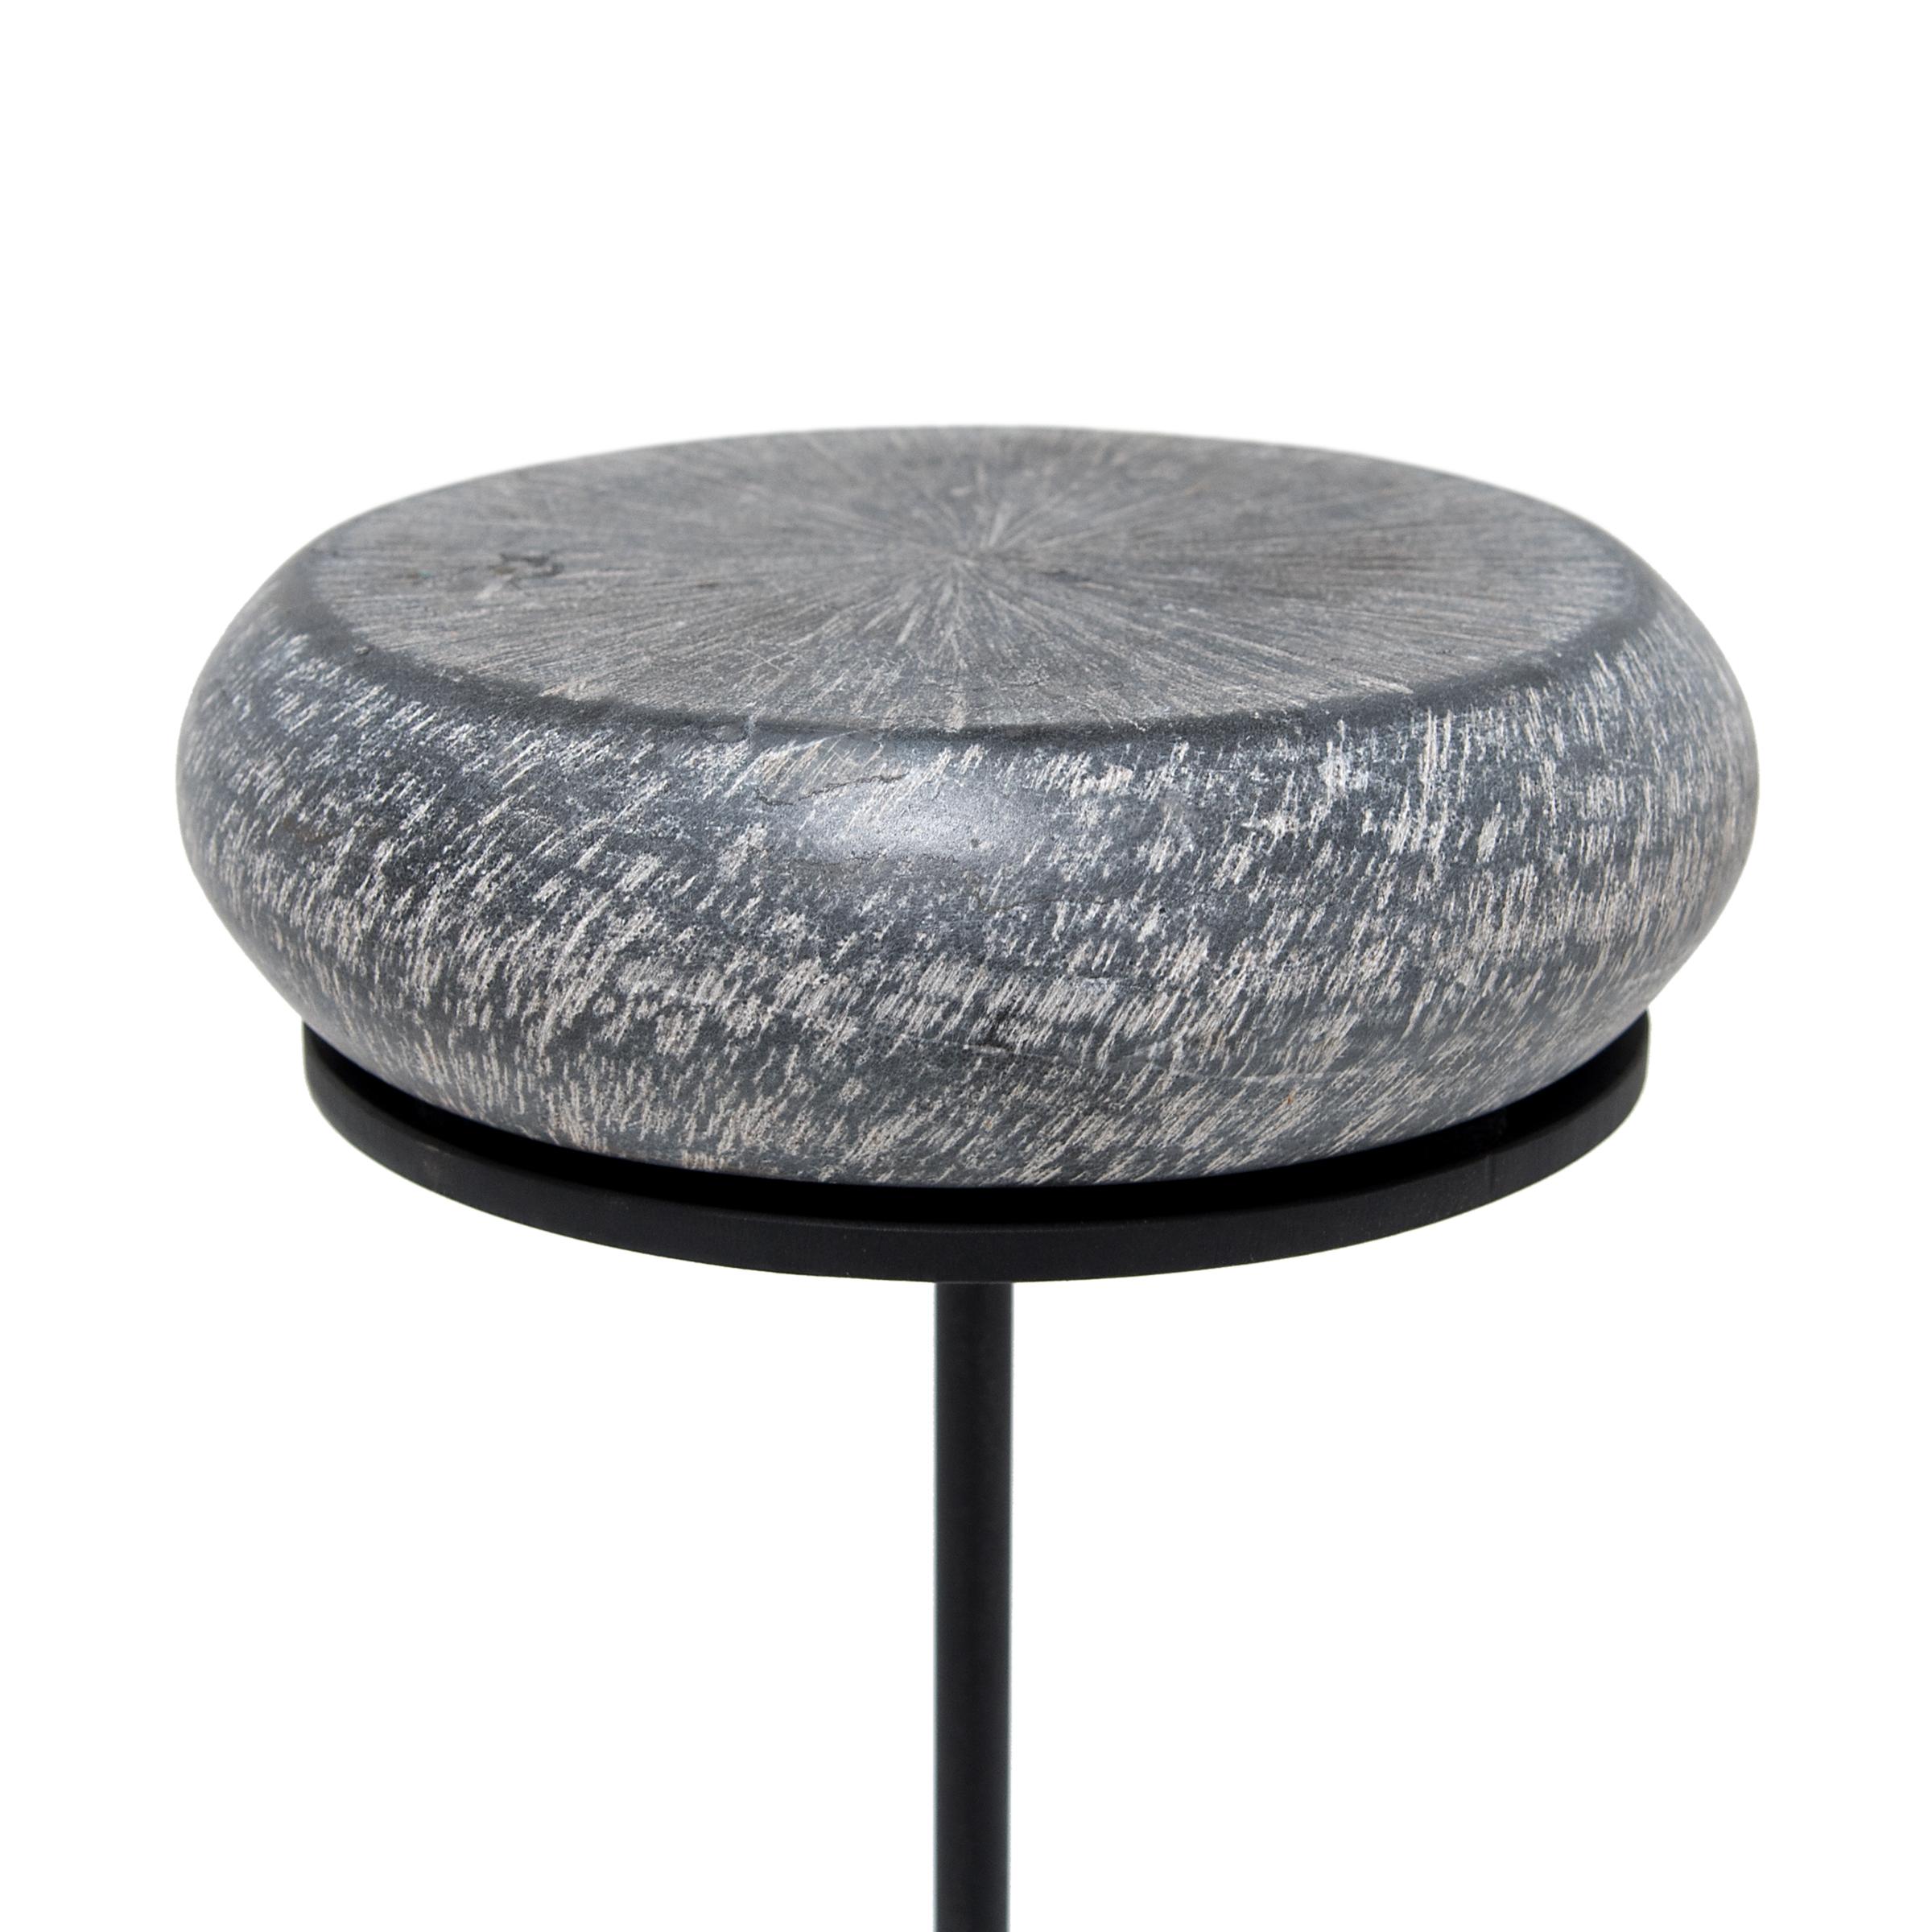 Minimalist Petite Drum Stone Pedestal Table